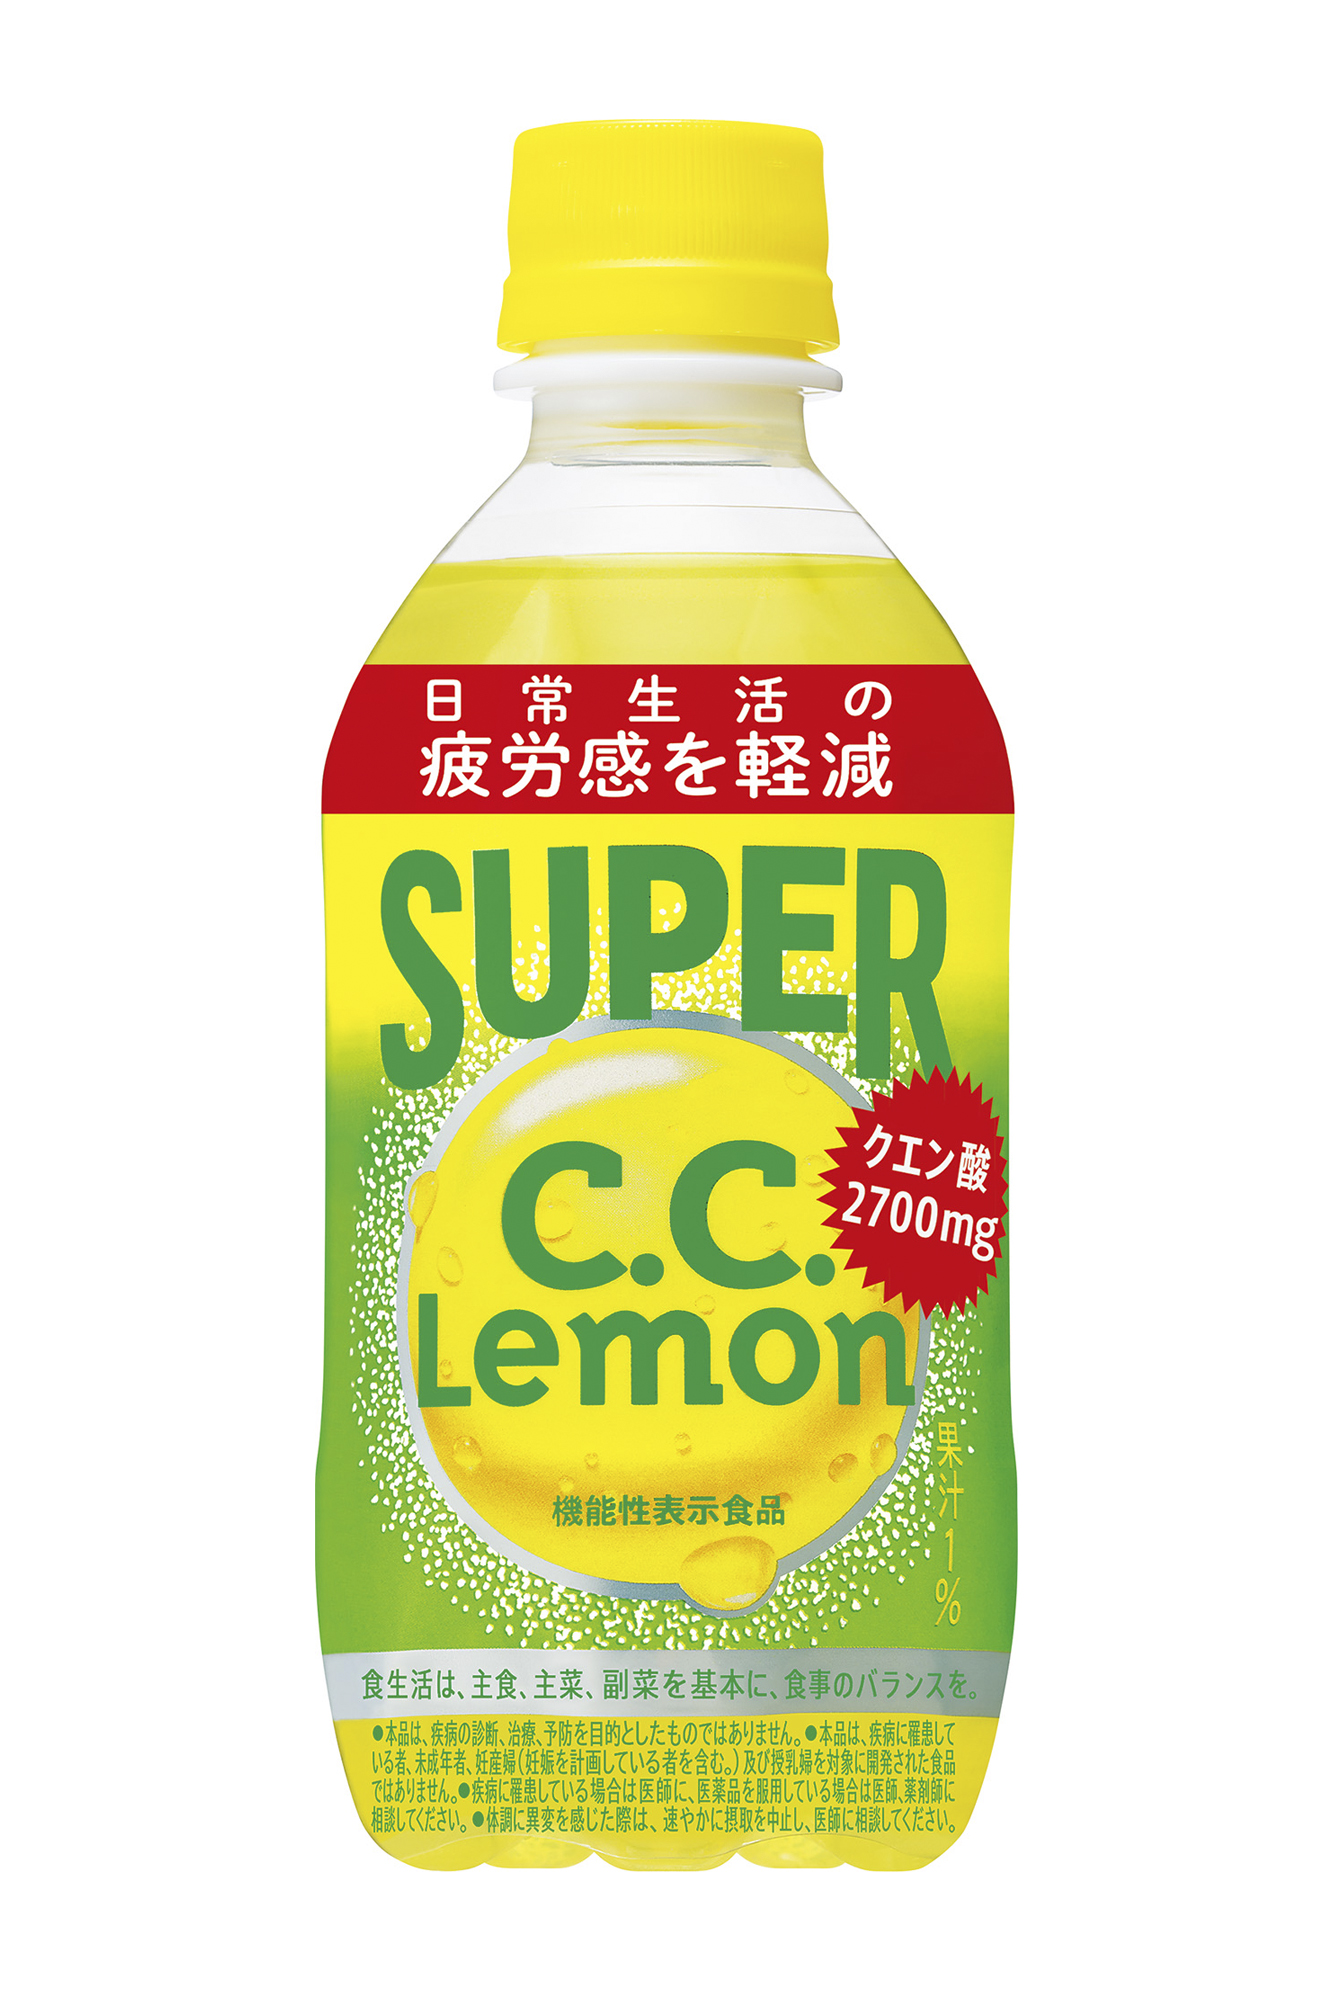 果汁系炭酸飲料 1 で日本初 機能性表示食品 スーパーc C レモン 新発売 ニュースリリース一覧 サントリー食品インターナショナル